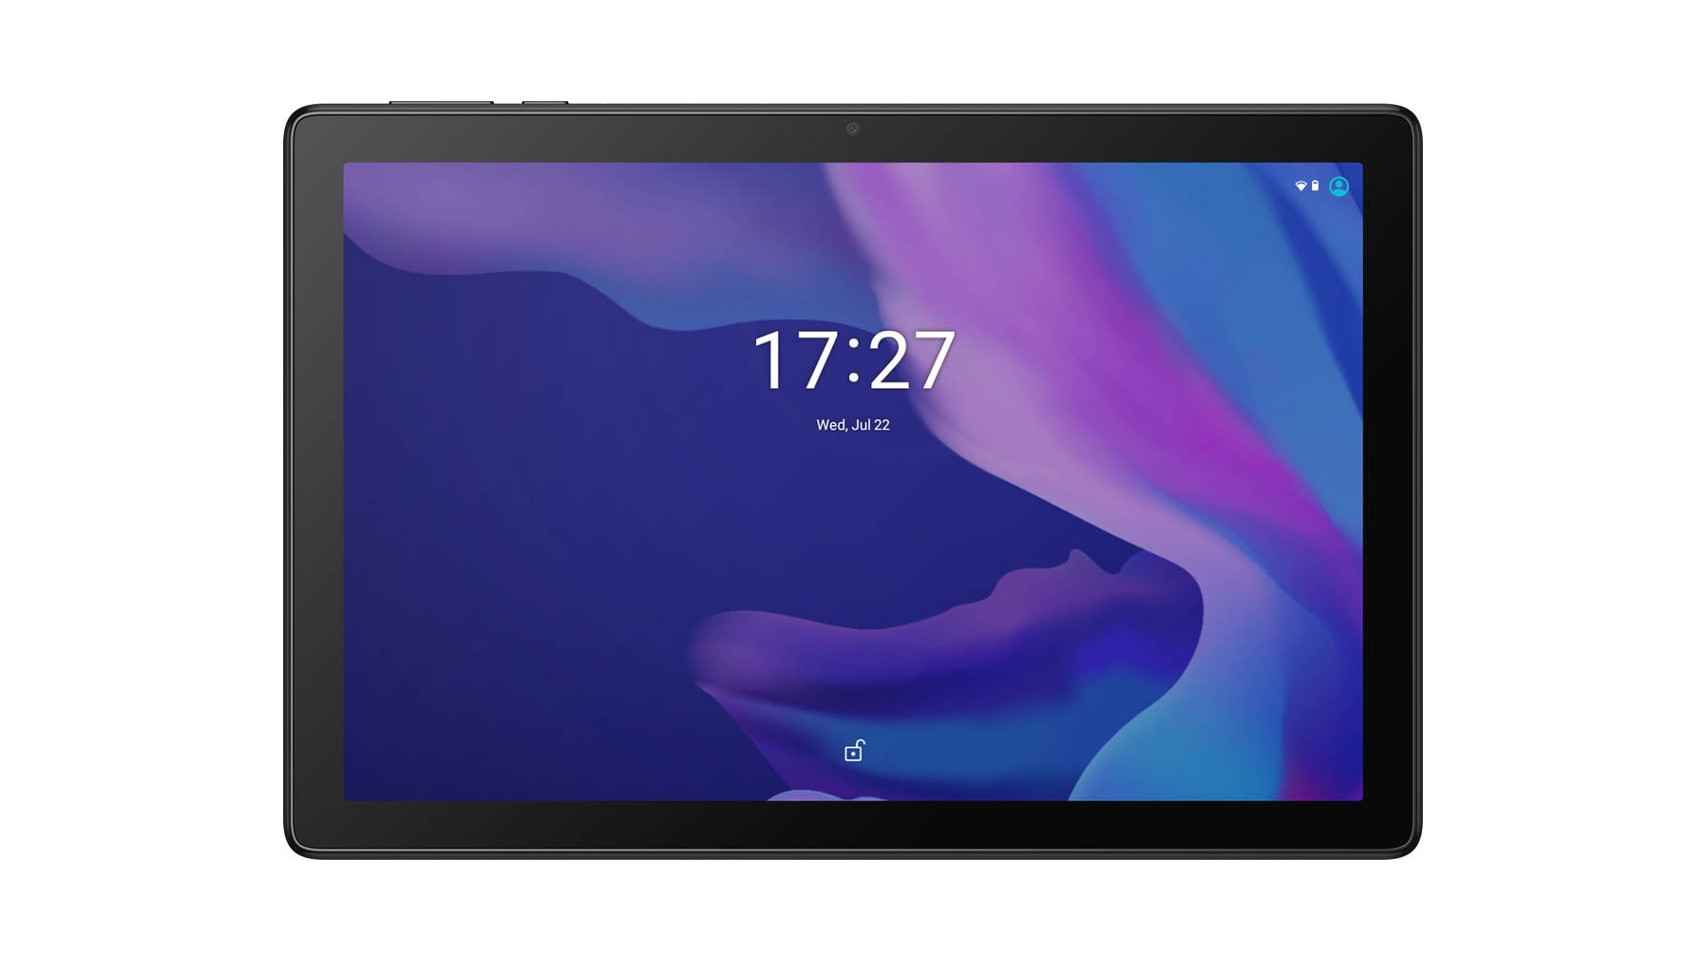 La tablet Alcatel 1t 7 que vende Carrefour.